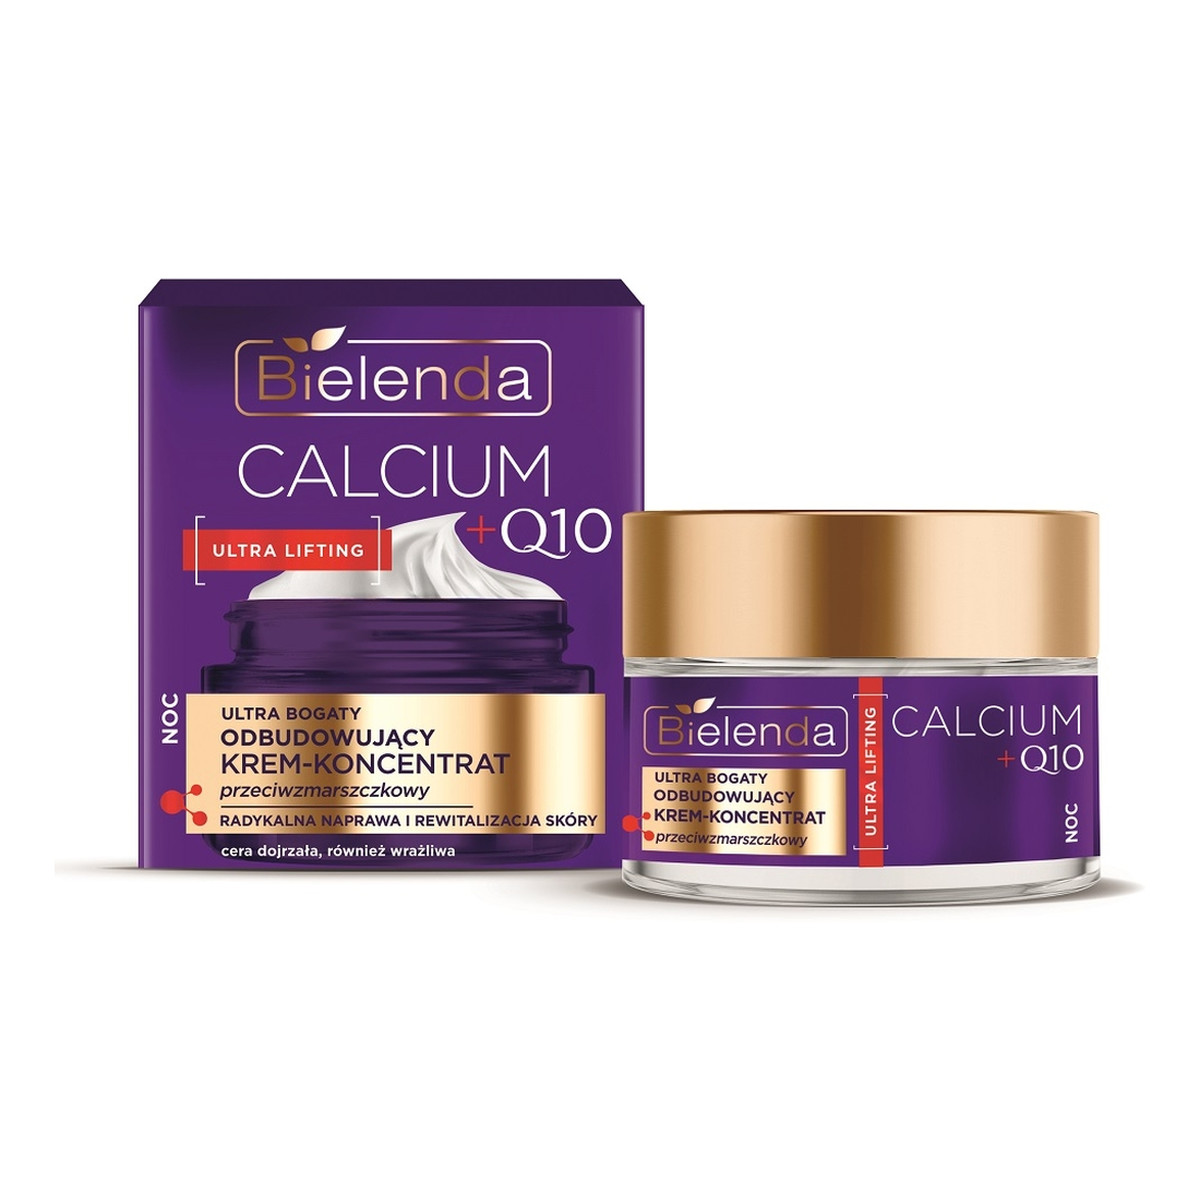 Bielenda Calcium + Q10 ultra bogaty odbudowujący Krem-koncentrat przeciwzmarszczkowy na noc 50ml